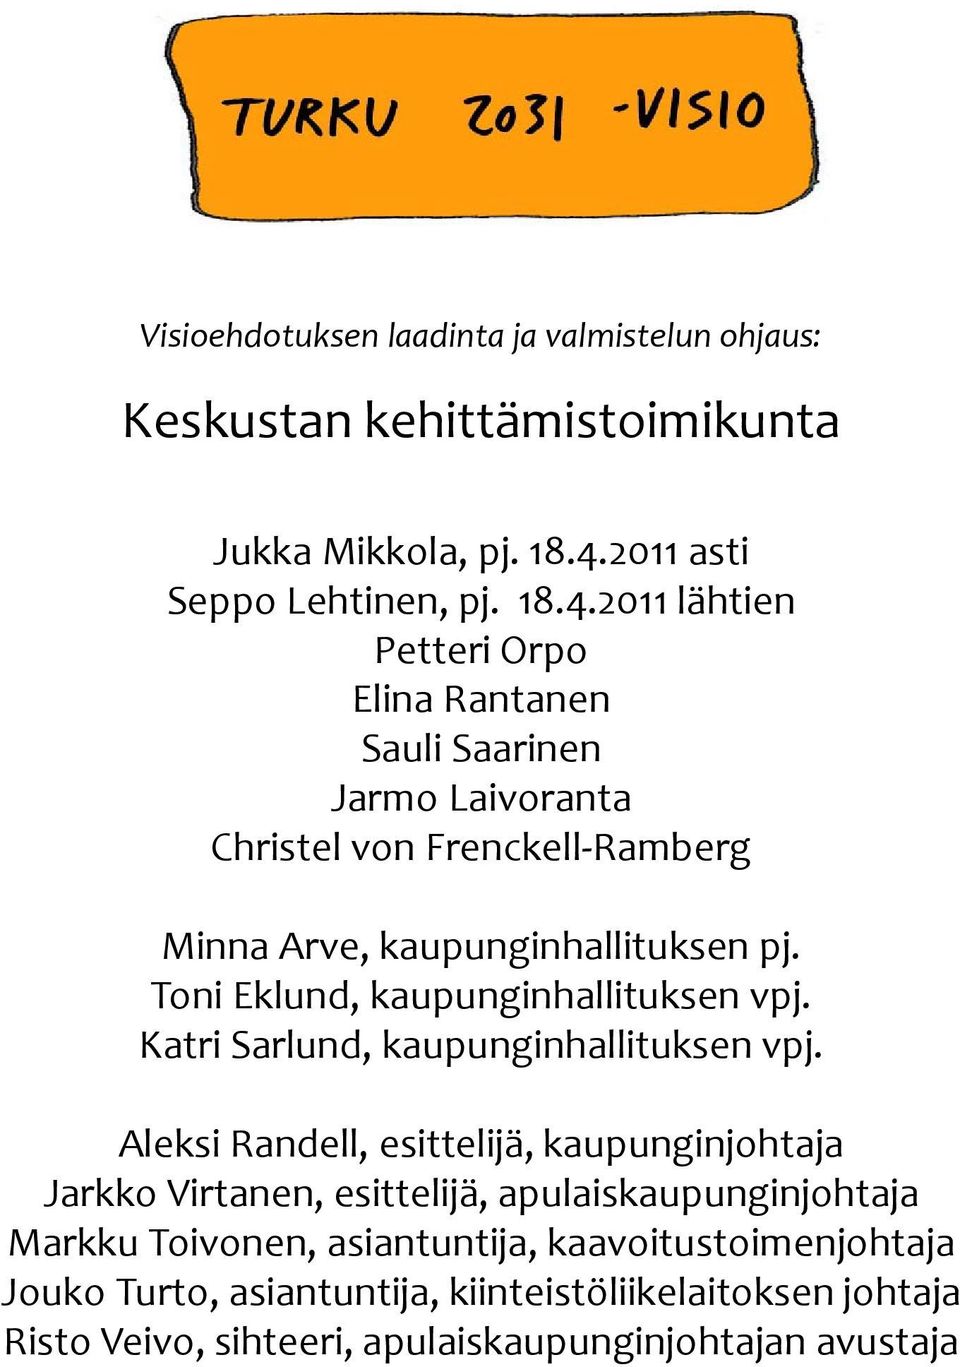 2011 lähtien Petteri Orpo Elina Rantanen Sauli Saarinen Jarmo Laivoranta Christel von Frenckell Ramberg Minna Arve, kaupunginhallituksen pj.